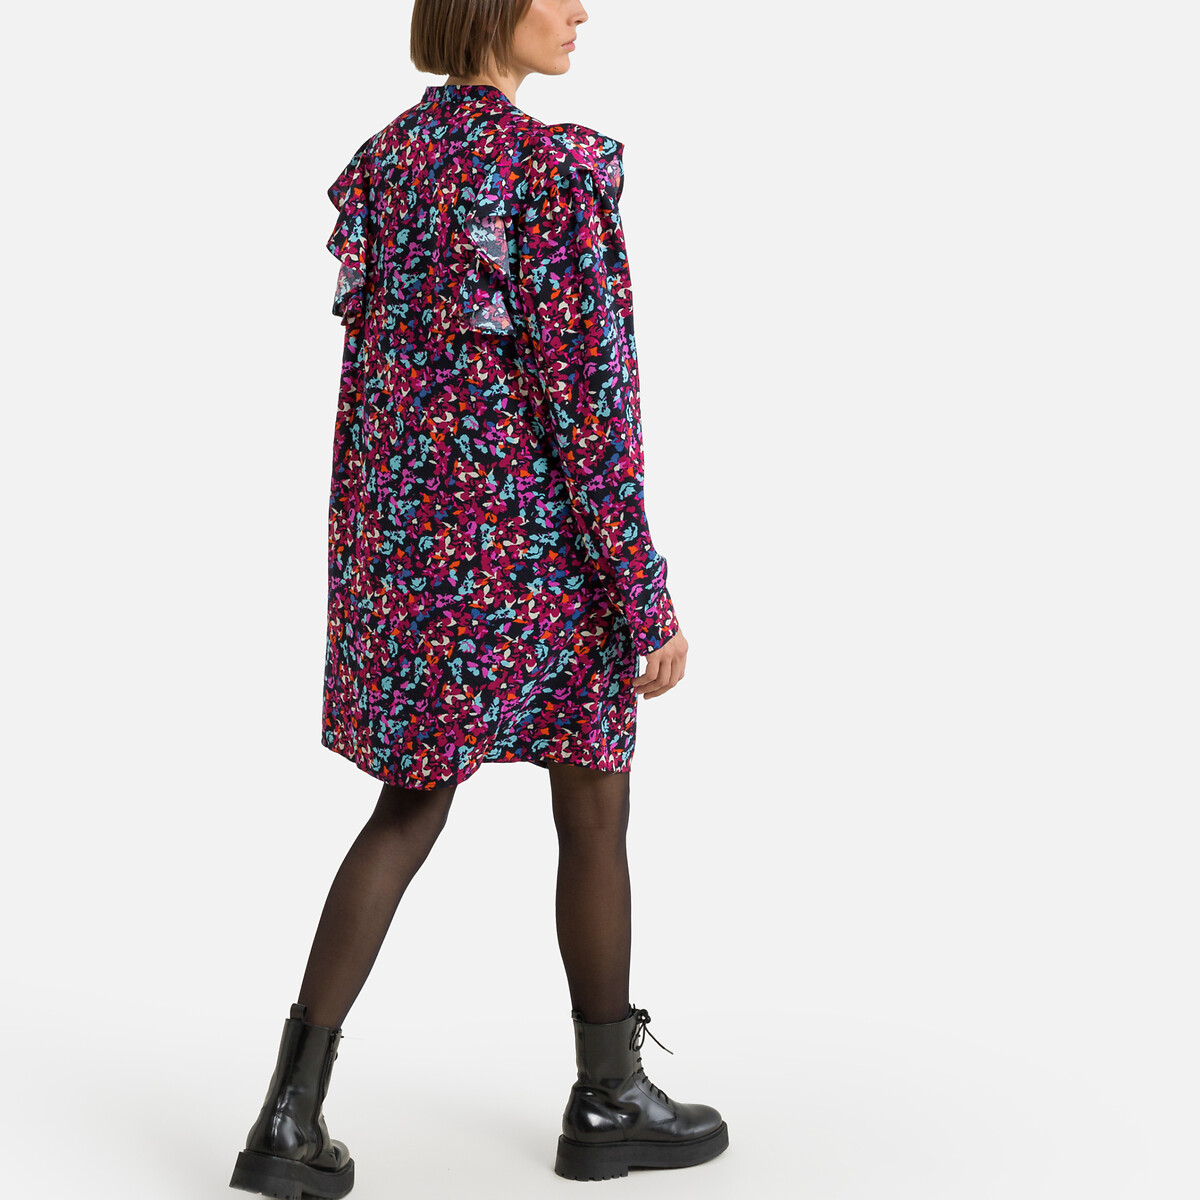 Платье С воротником-стойкой длинные рукава цветочный принт XS разноцветный LaRedoute, размер XS - фото 4